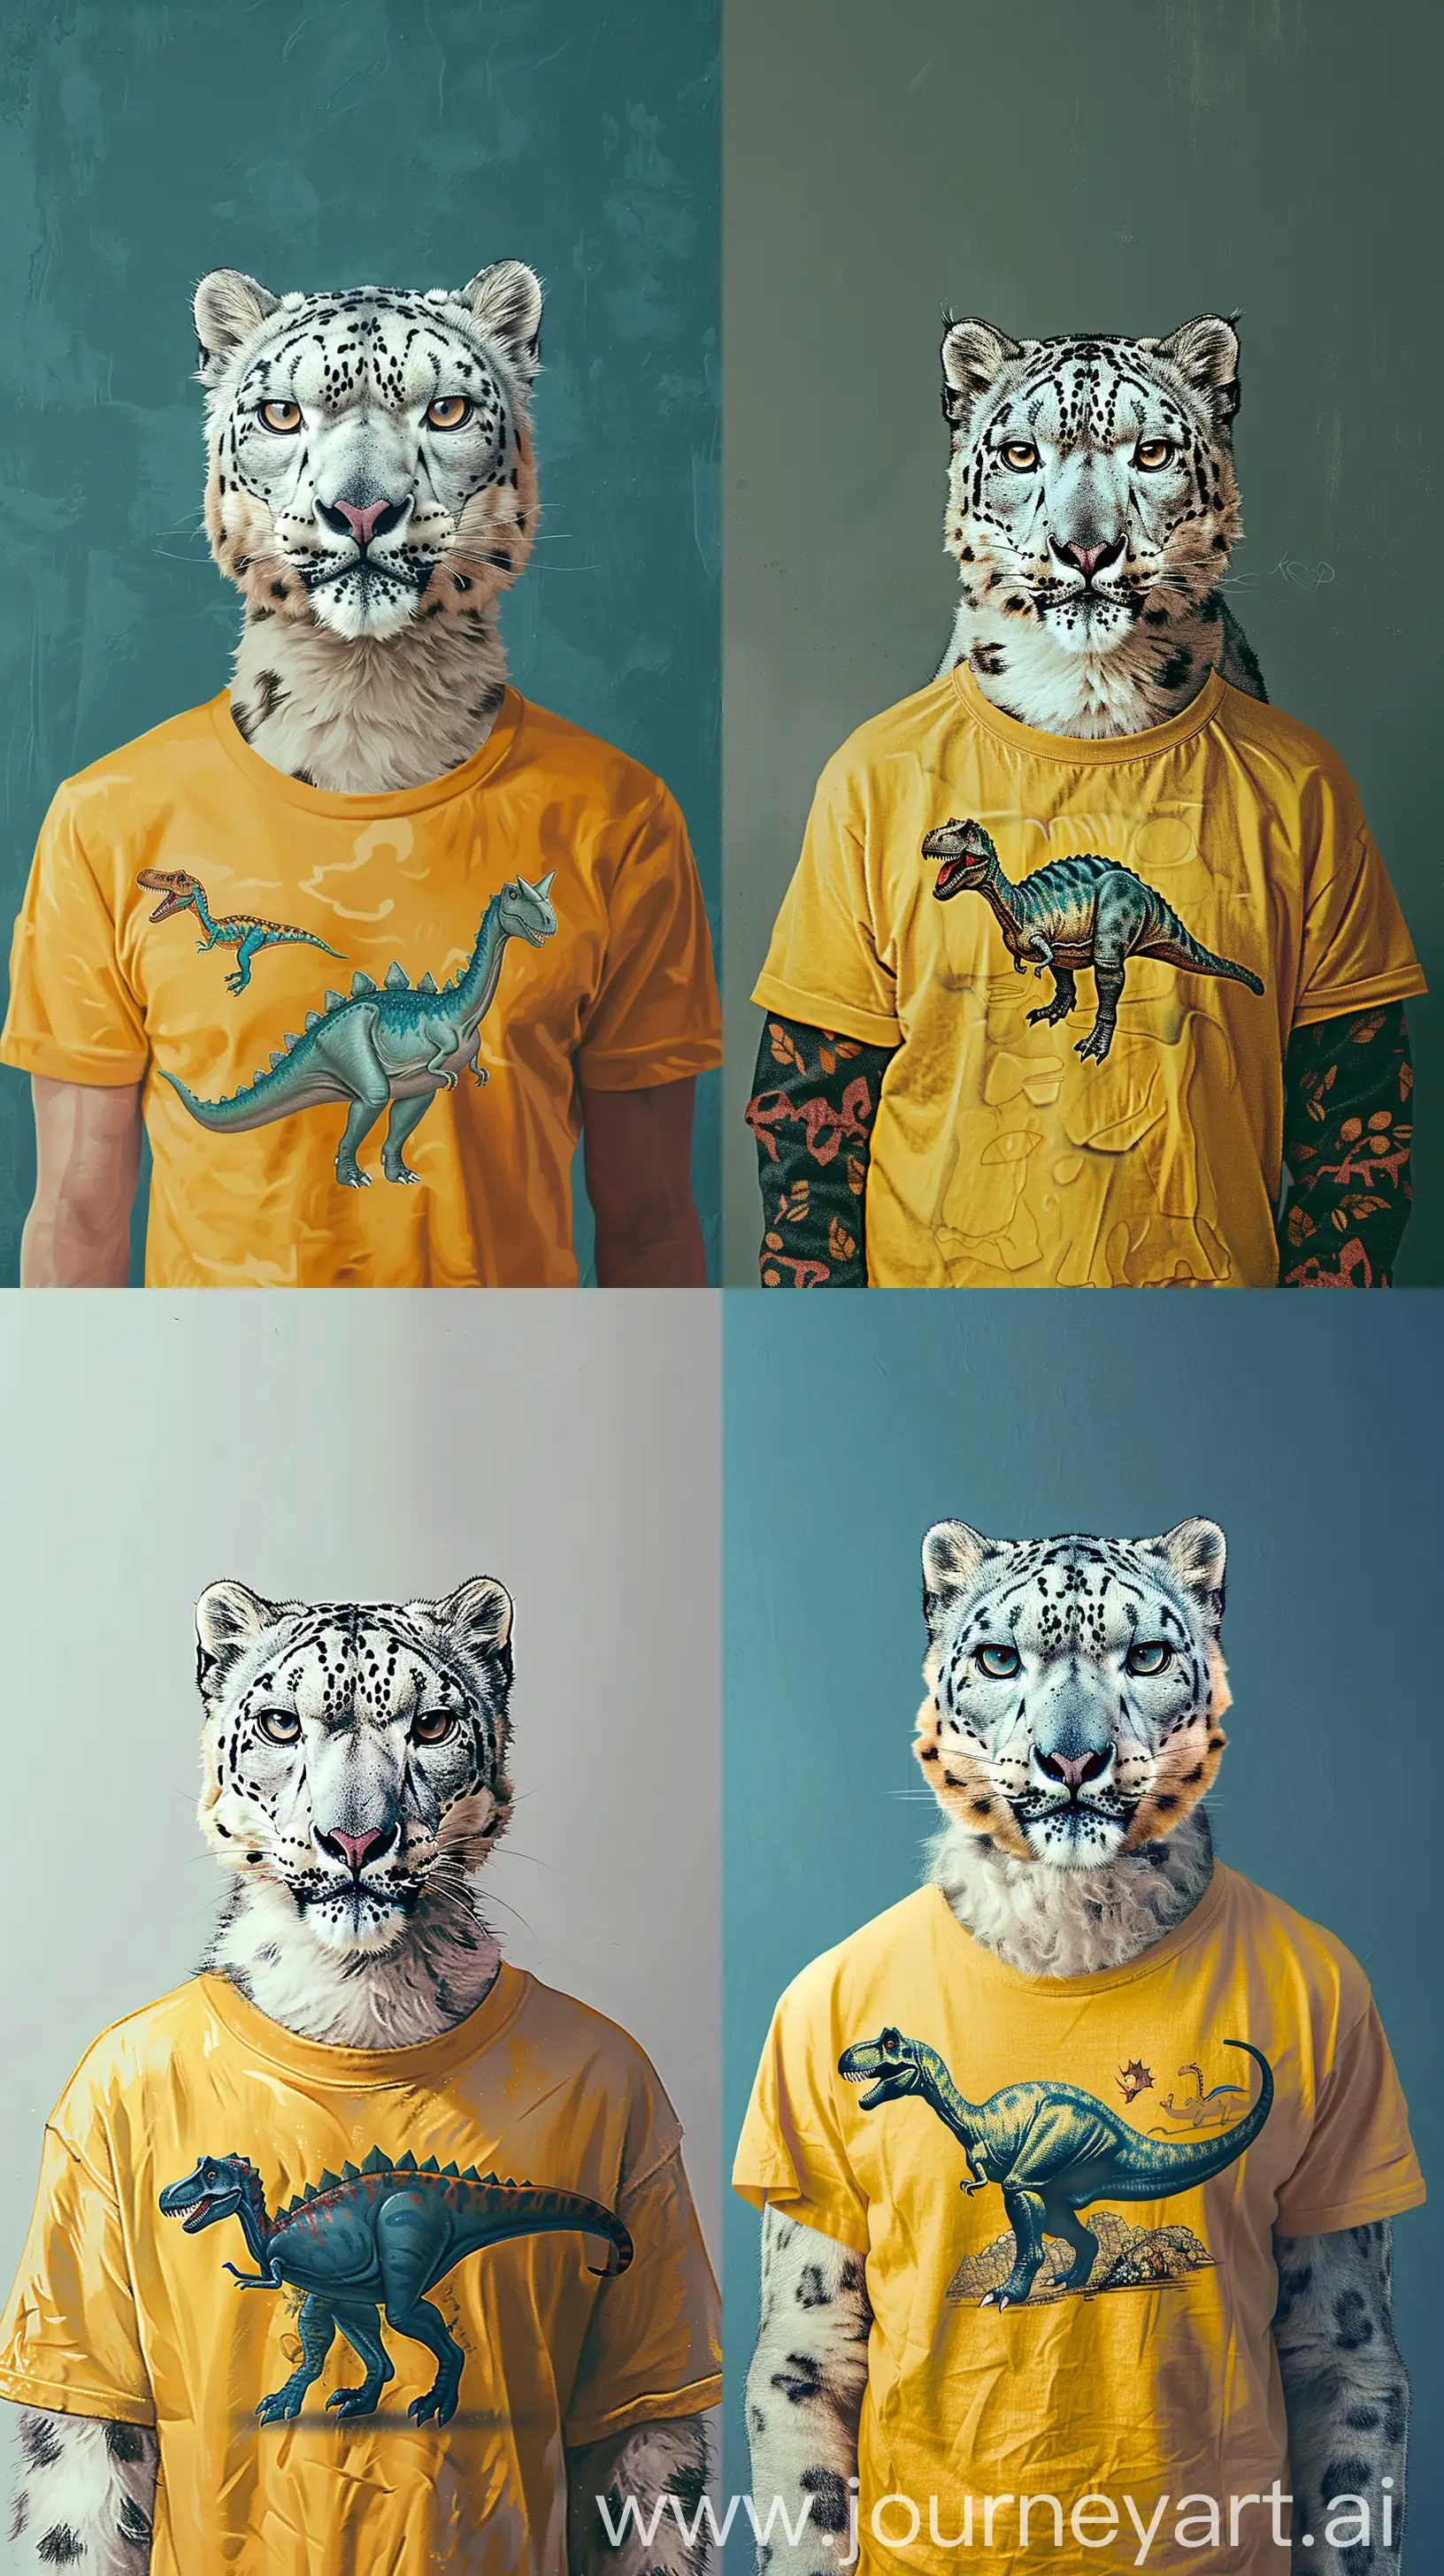 Snow-Leopard-Humanized-in-Kees-van-Dongen-Art-Style-Phone-Wallpaper